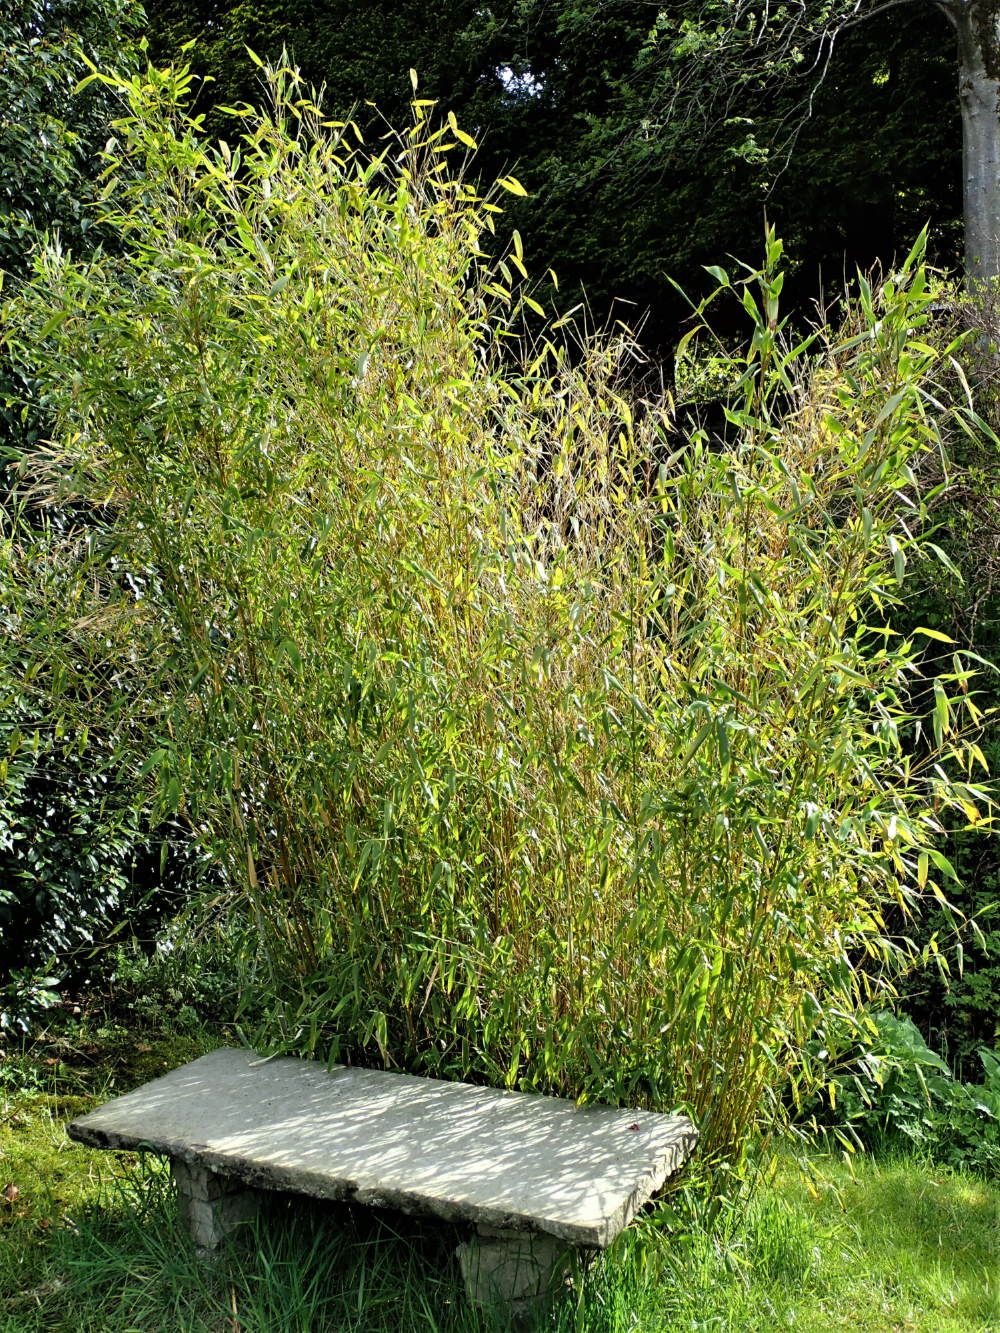 bamboo seat